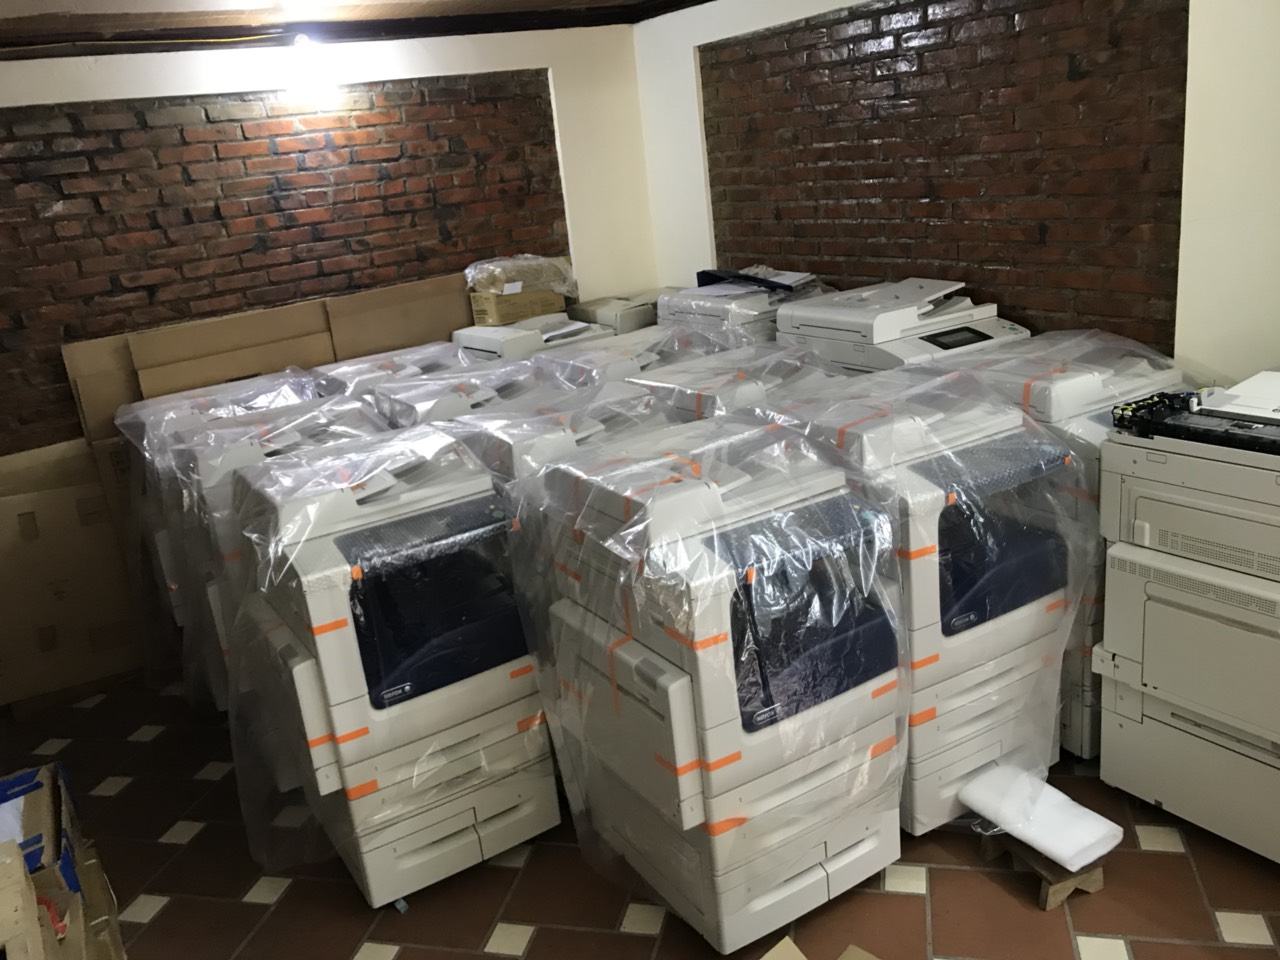 Báo giá cho thuê máy photocopy tại Hưng Yên 2020- giá tốt- dịch vụ uy tín